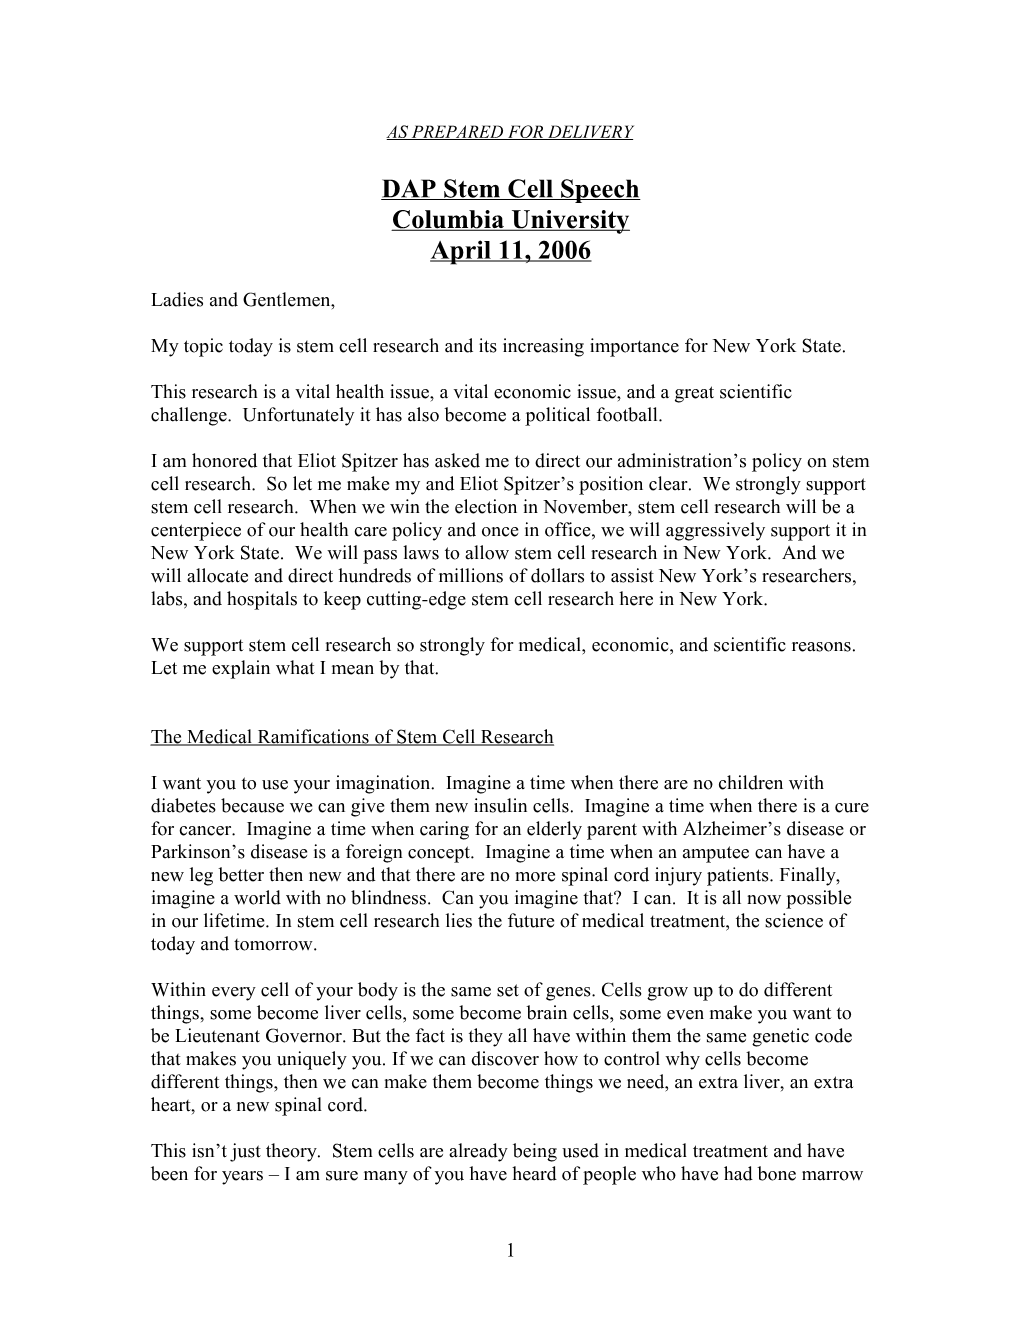 Draft DAP Stem Cell Speech